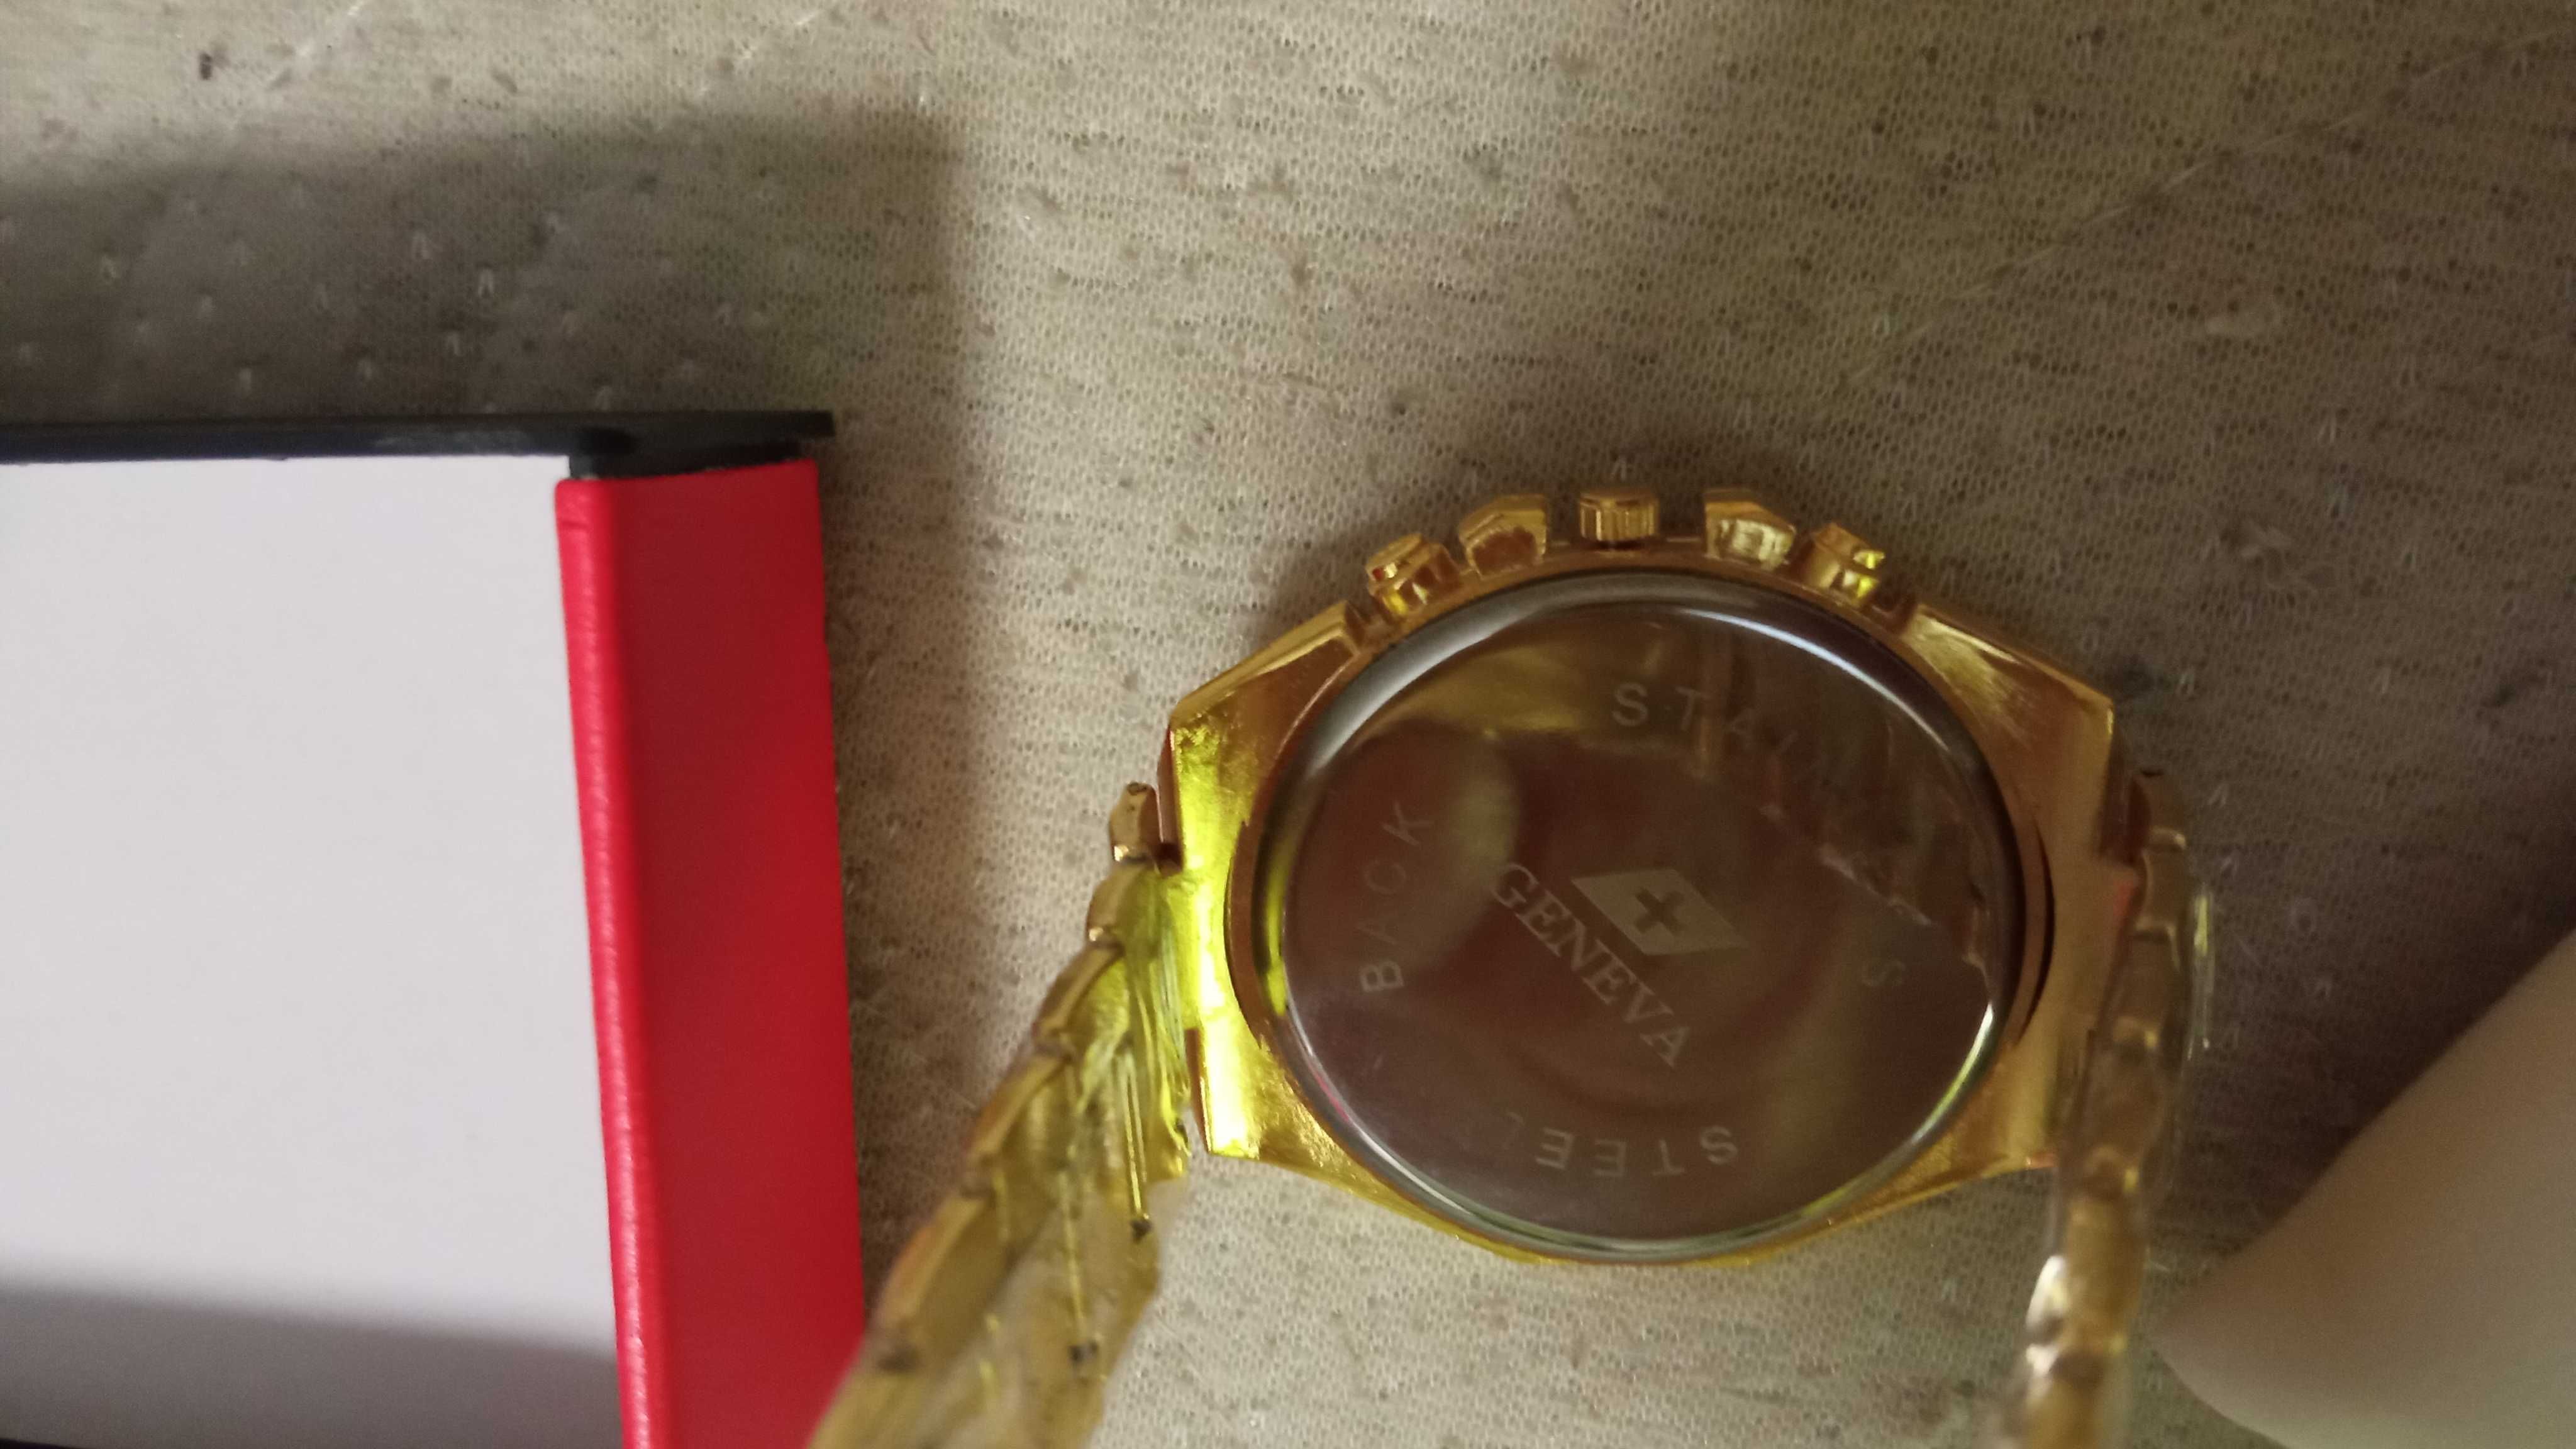 Zegarek męski Geneva w komorze złotym